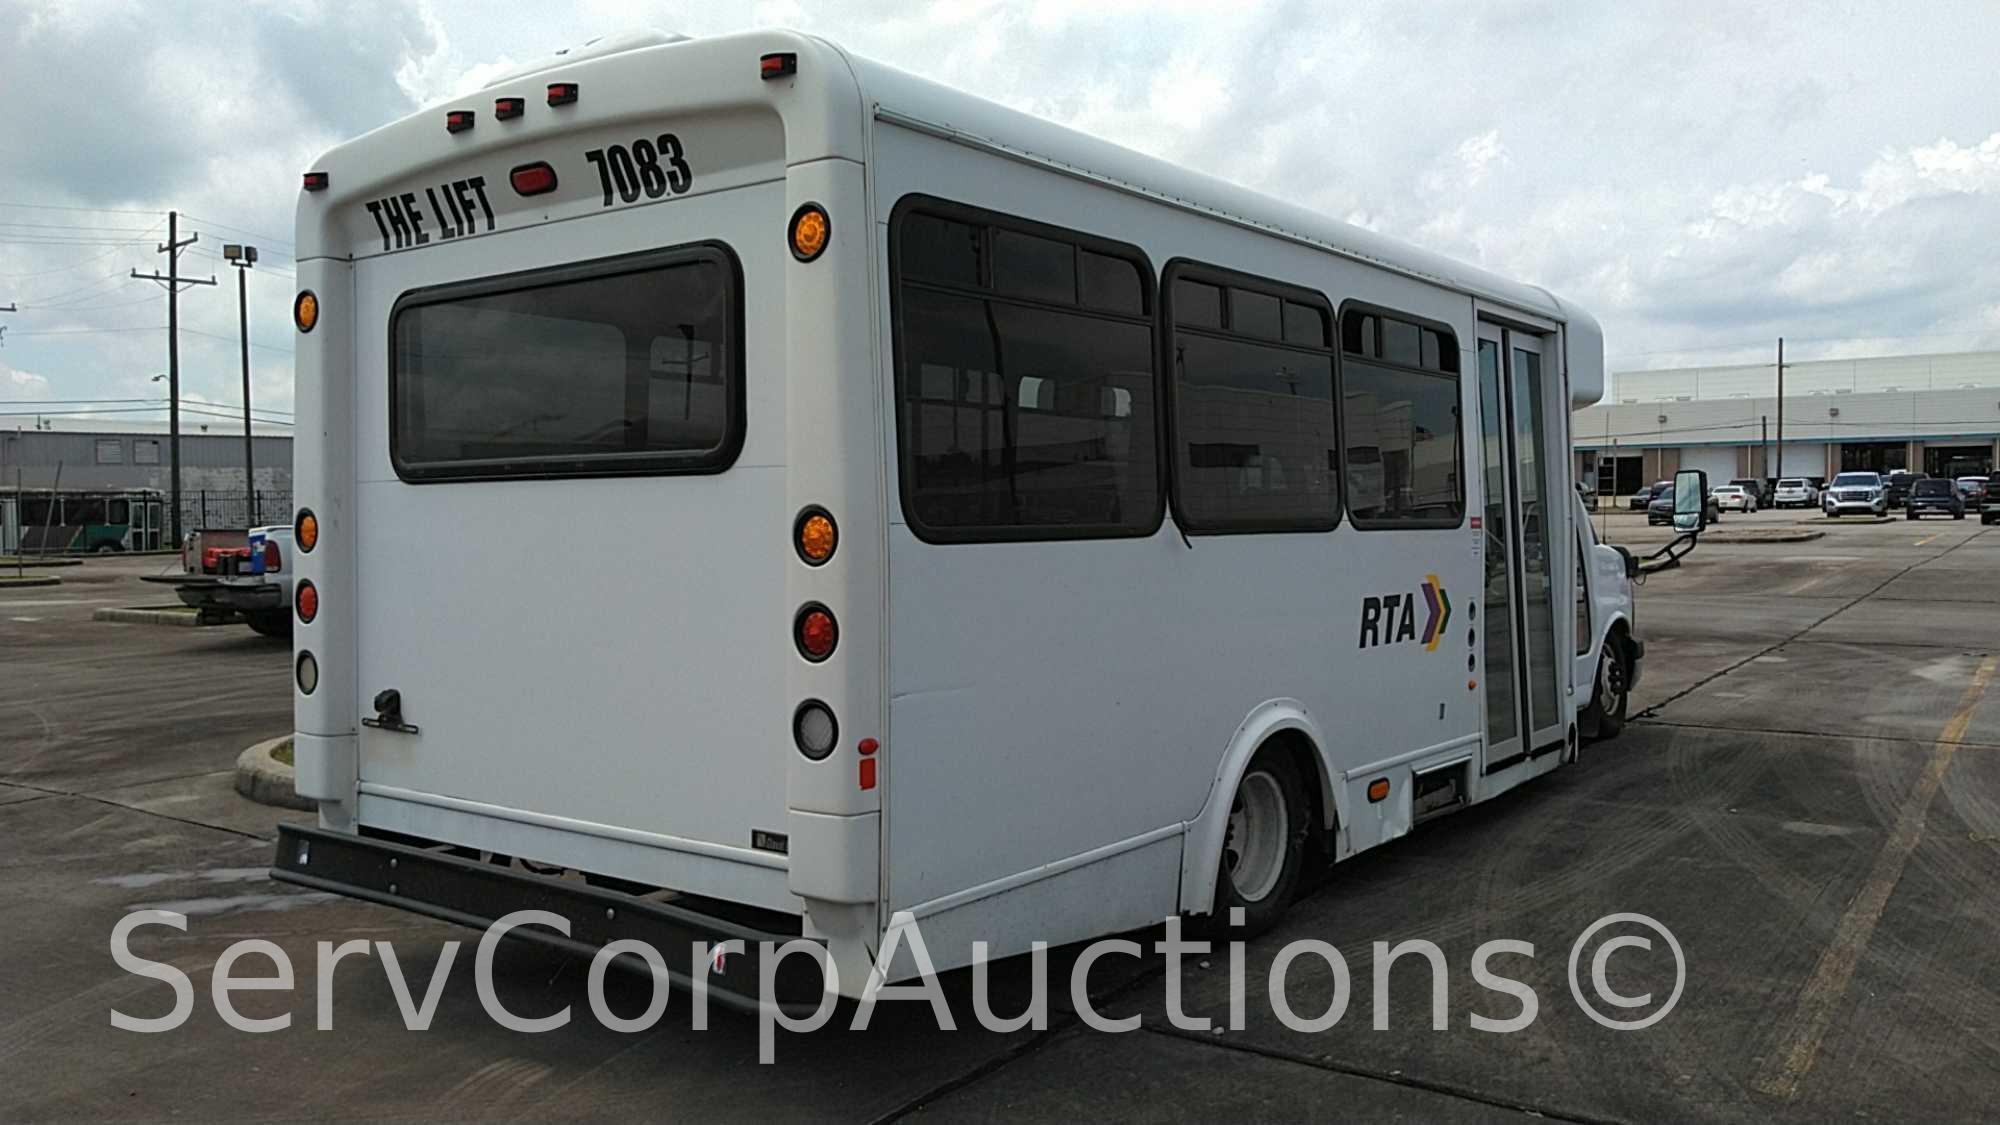 2012 Chevrolet Glavel Express Van Shuttle Bus, VIN # 1GB6G5BG6C1180391